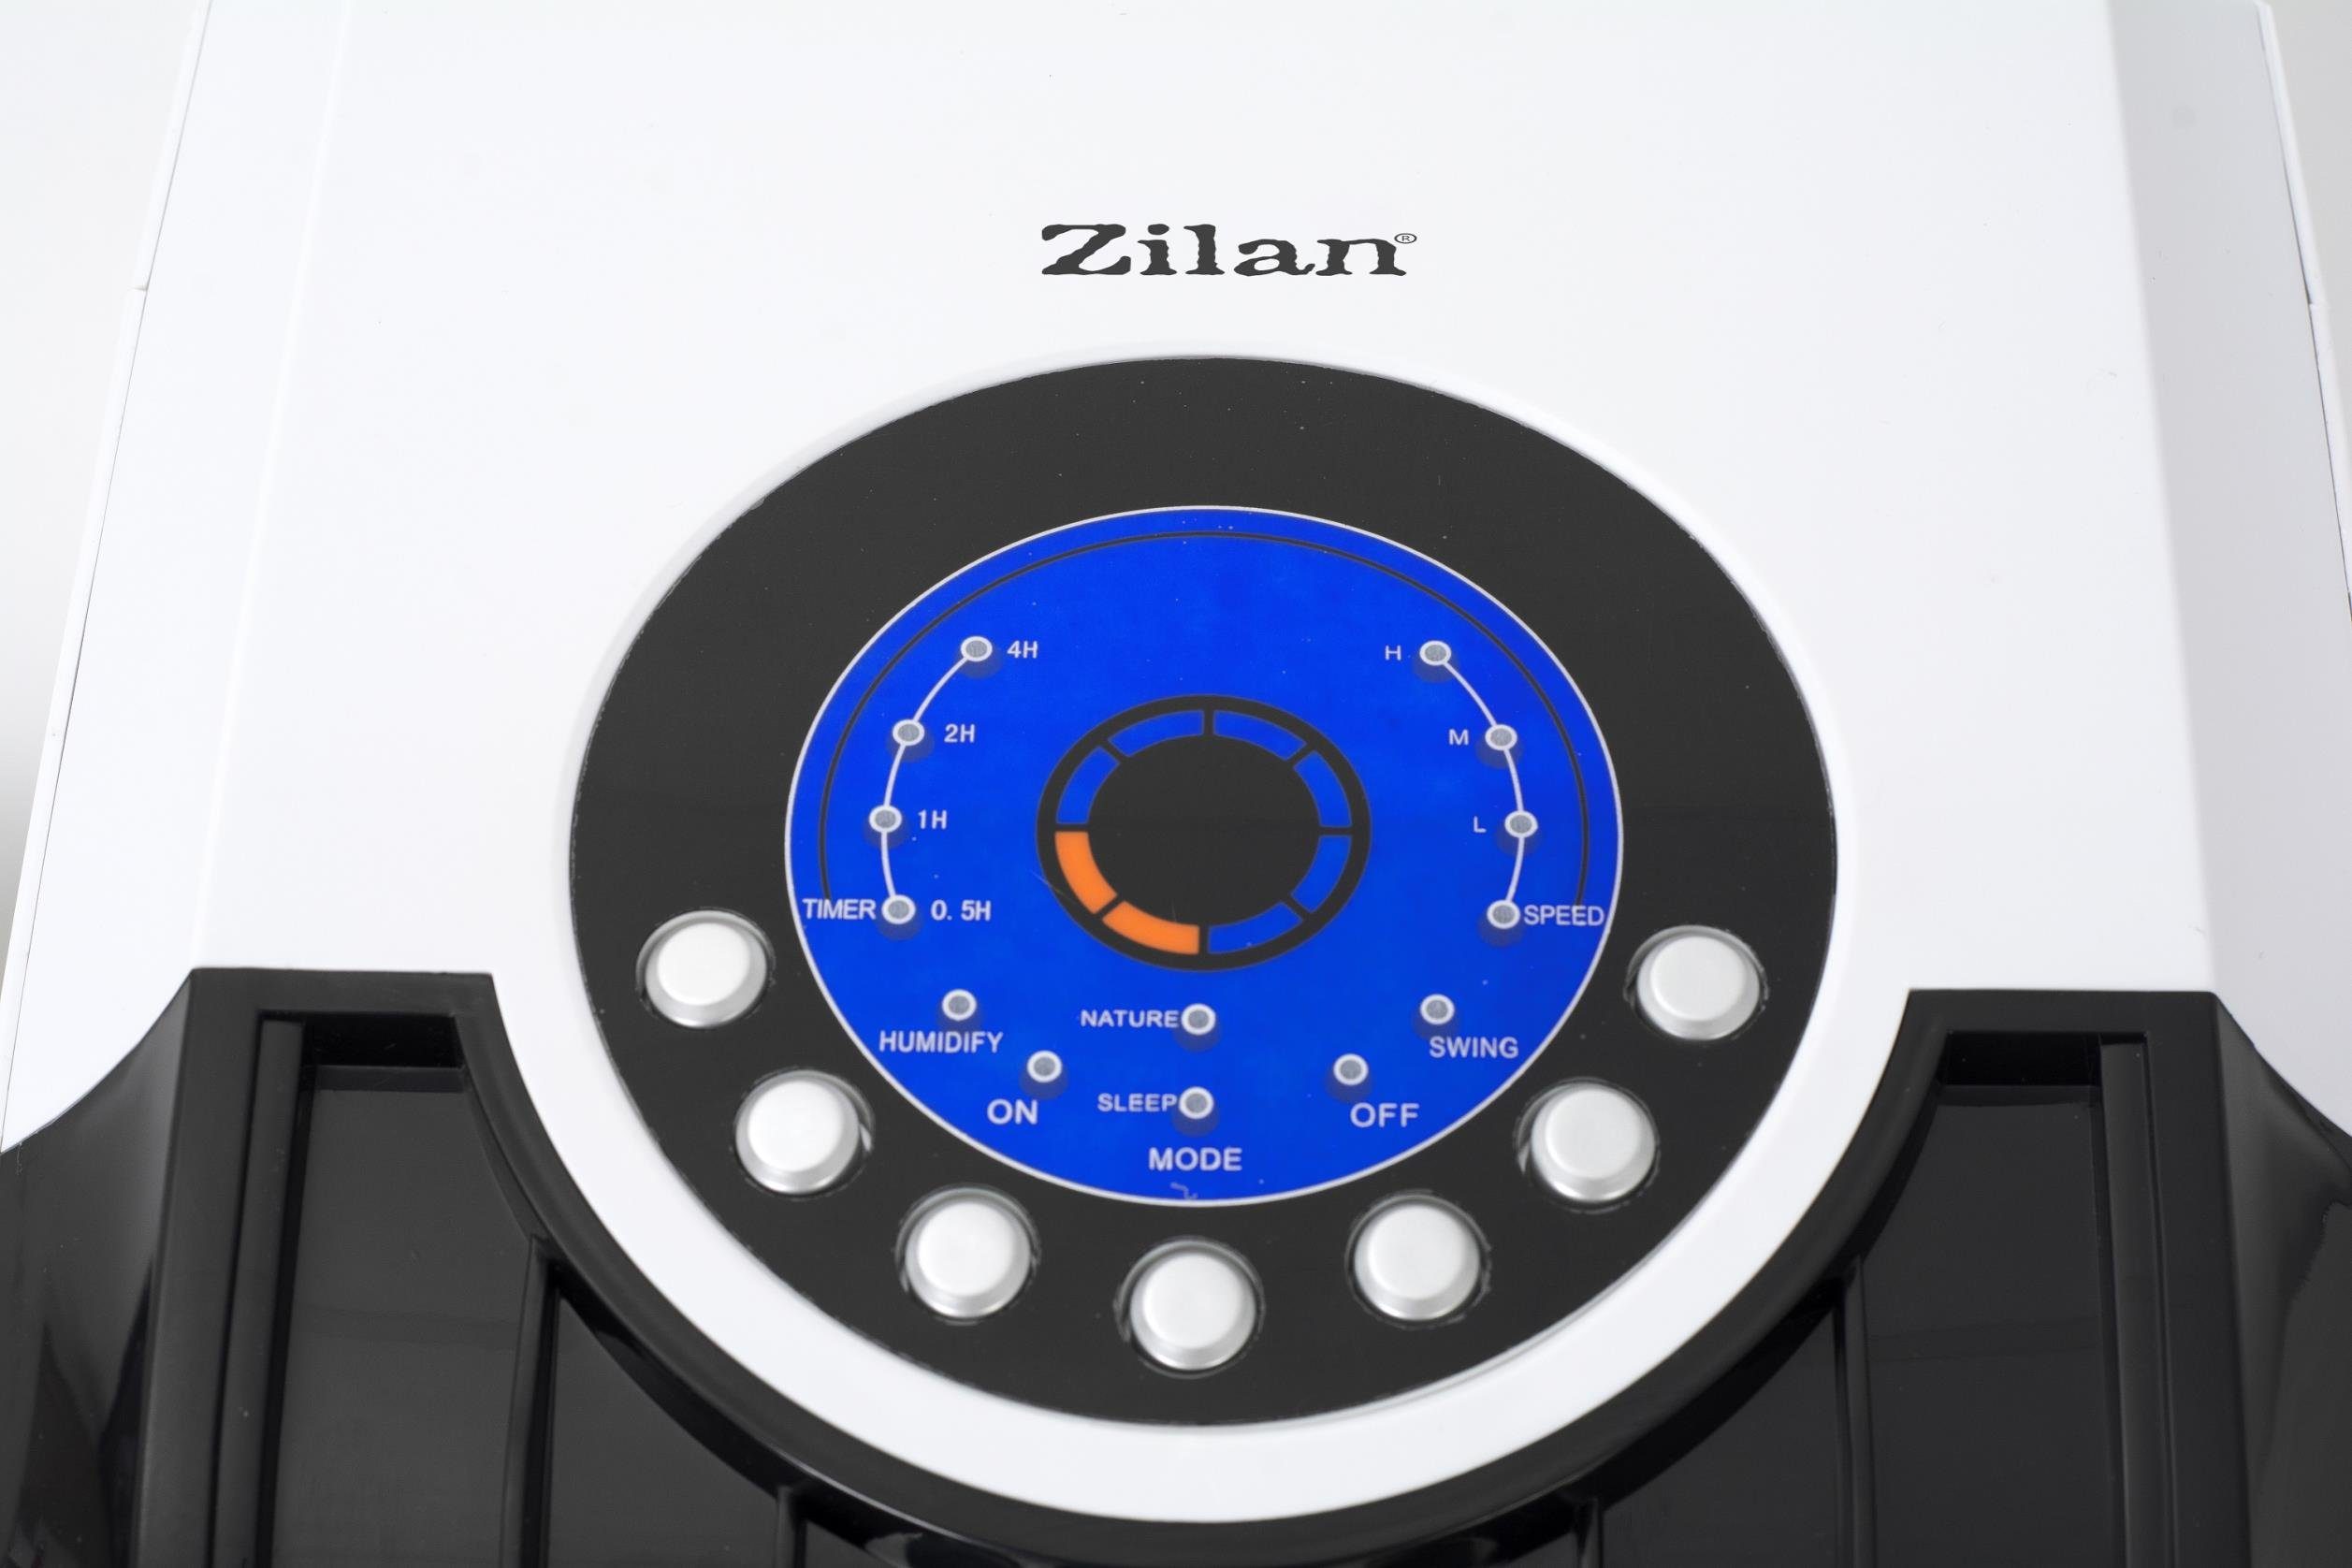 Fernbedienung Ventilatorkombigerät Oszillierend, 7.5h Timer, Zilan ZLN-3390,